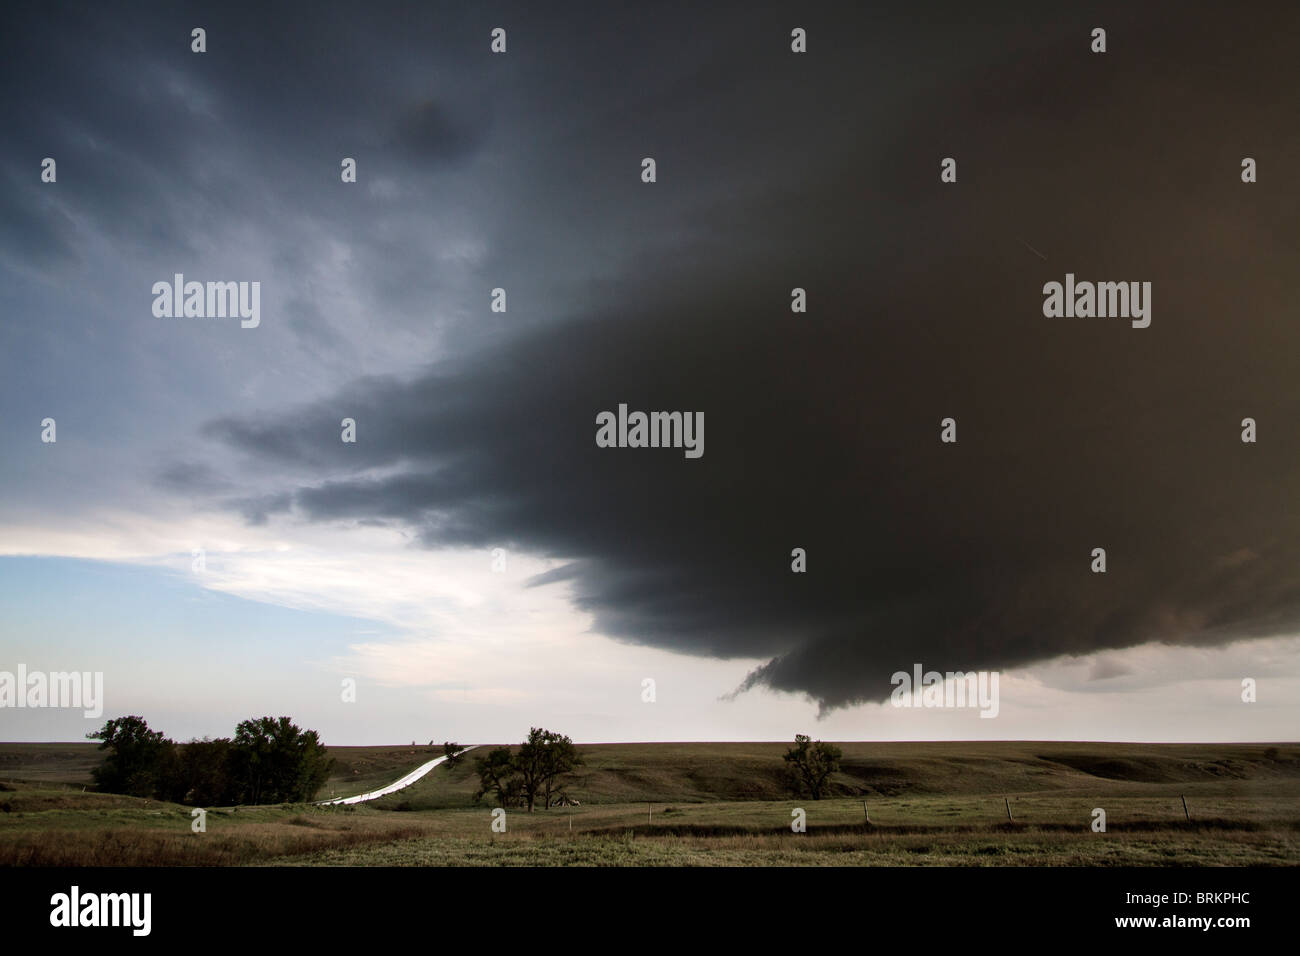 Ein supercellular Gewitter mit einer Wand-Wolke und einem Hauch von einem Wolkentrichter in Kansas, 23. Mai 2010. Stockfoto